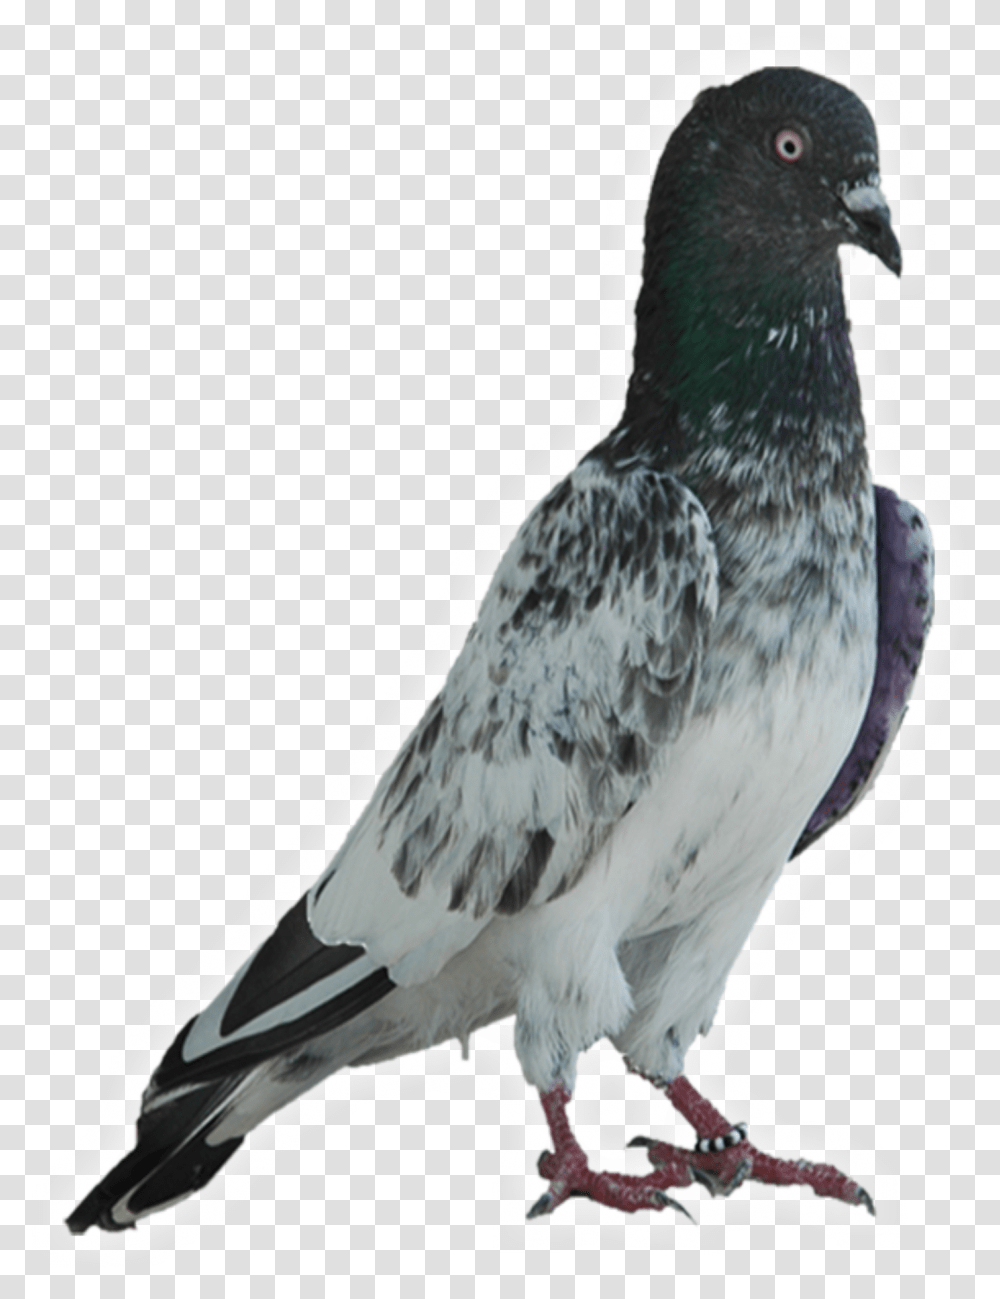 Faqirgul Original Faqeer Gul Kabootar, Bird, Animal, Pigeon, Dove Transparent Png